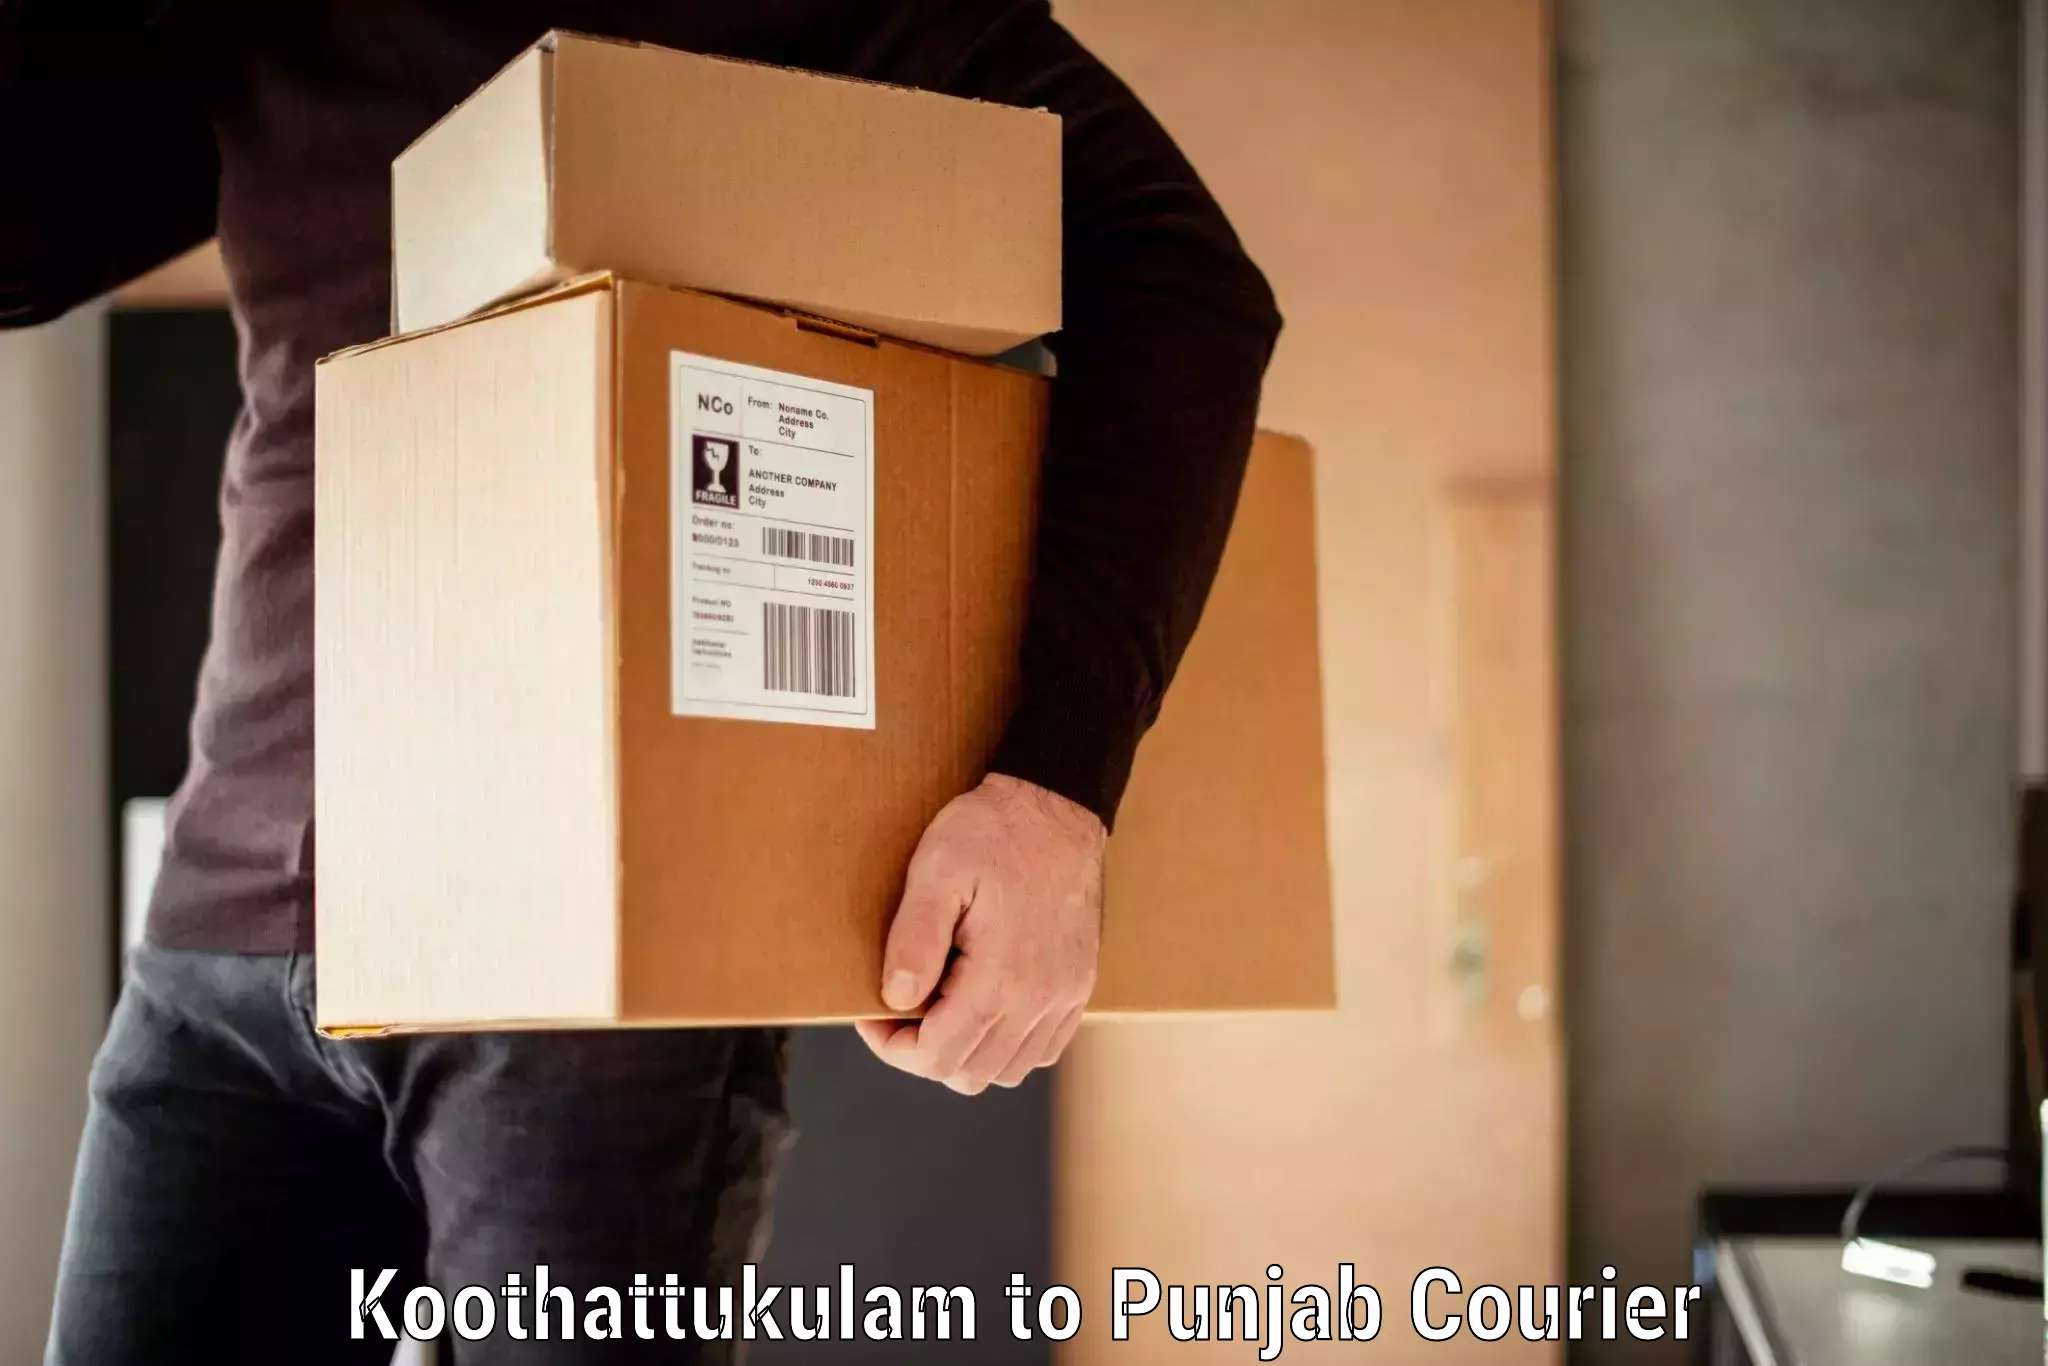 Baggage delivery technology Koothattukulam to Abohar